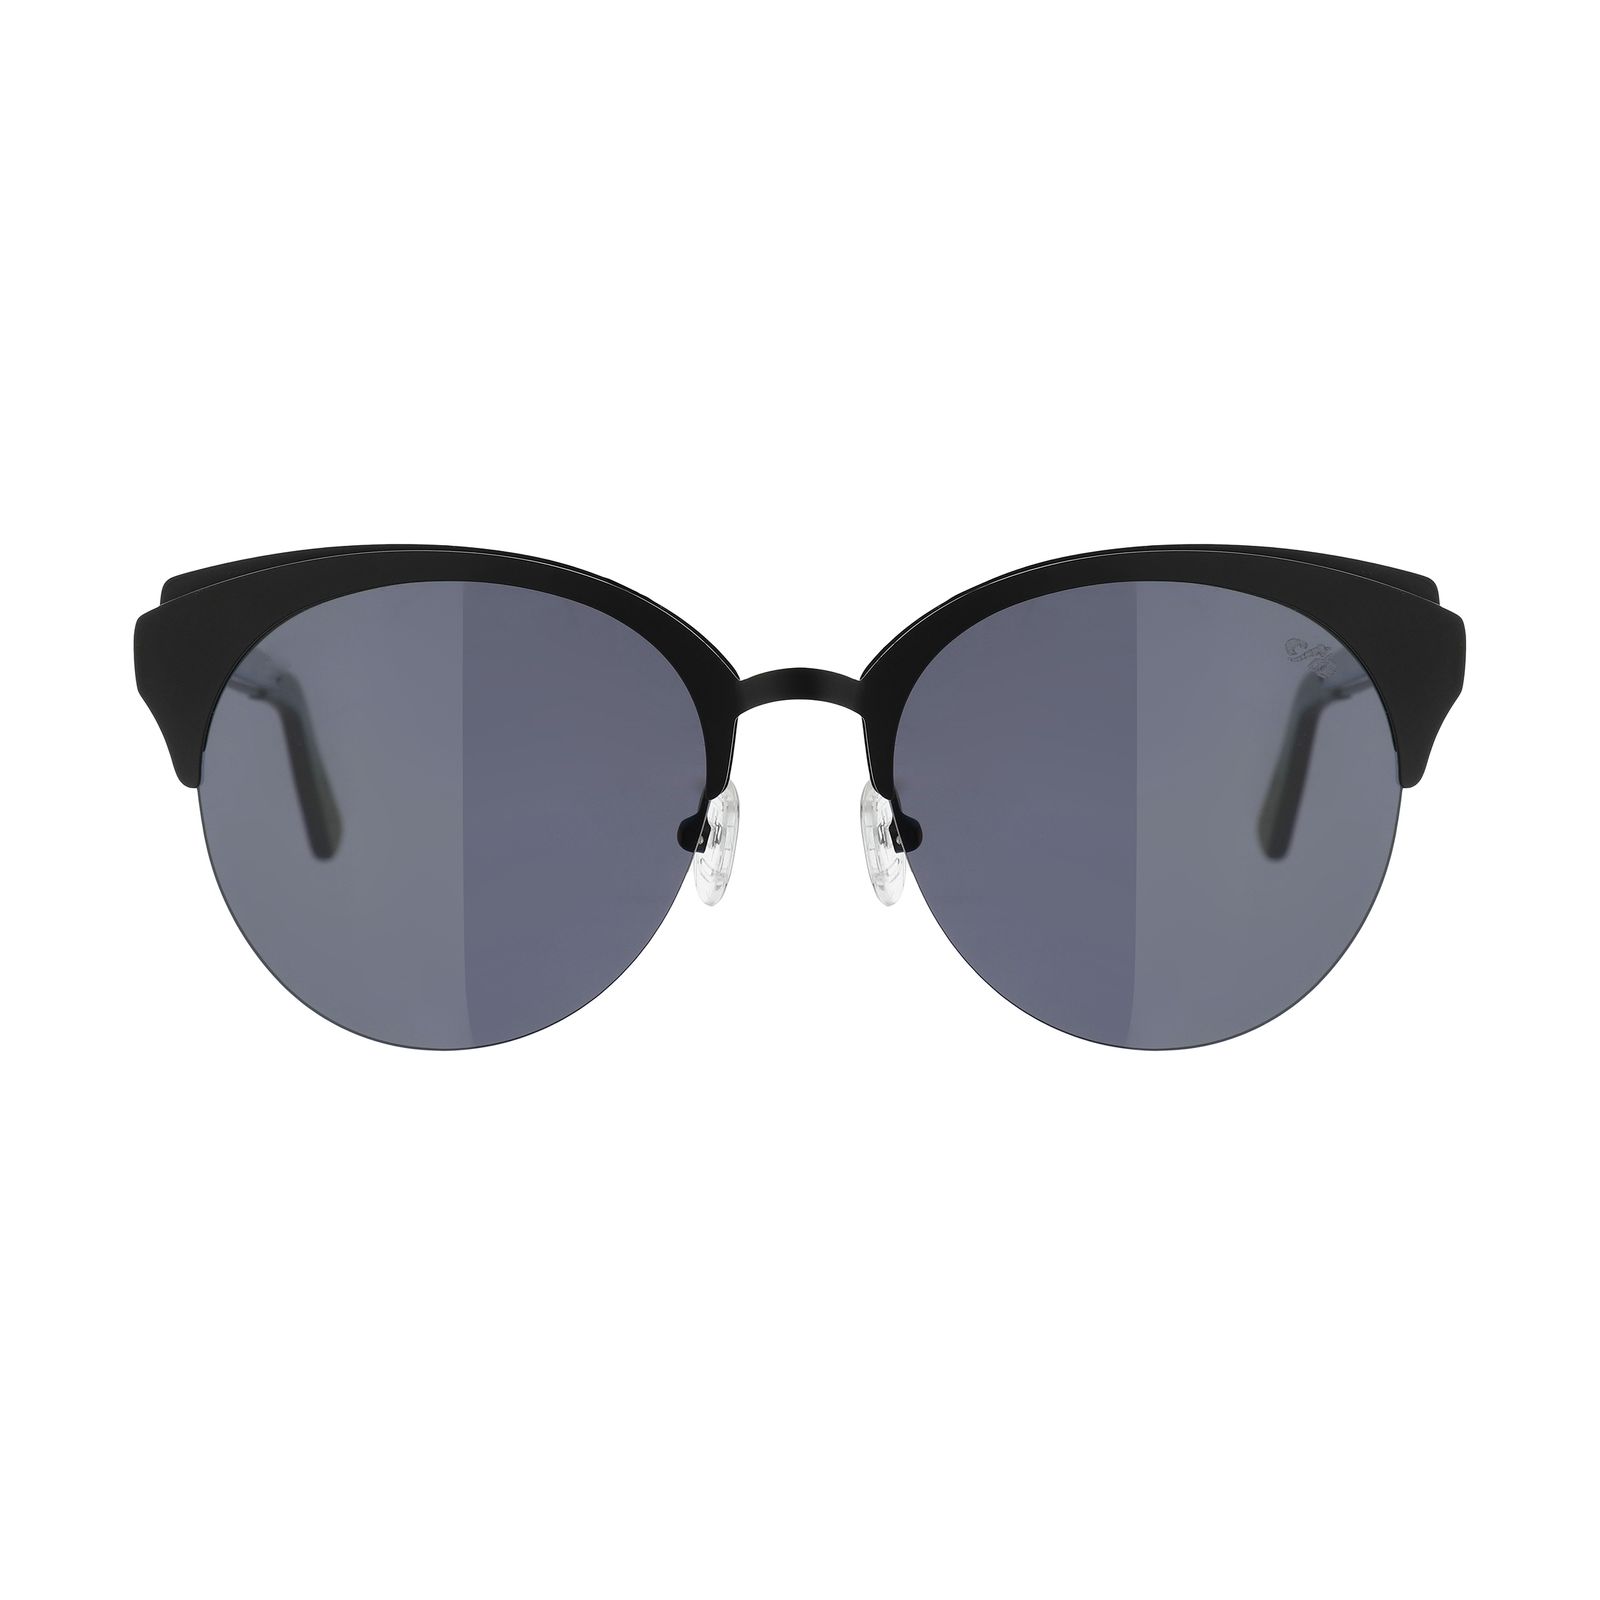 عینک آفتابی زنانه چیلی بینز مدل 2555 bl -  - 1